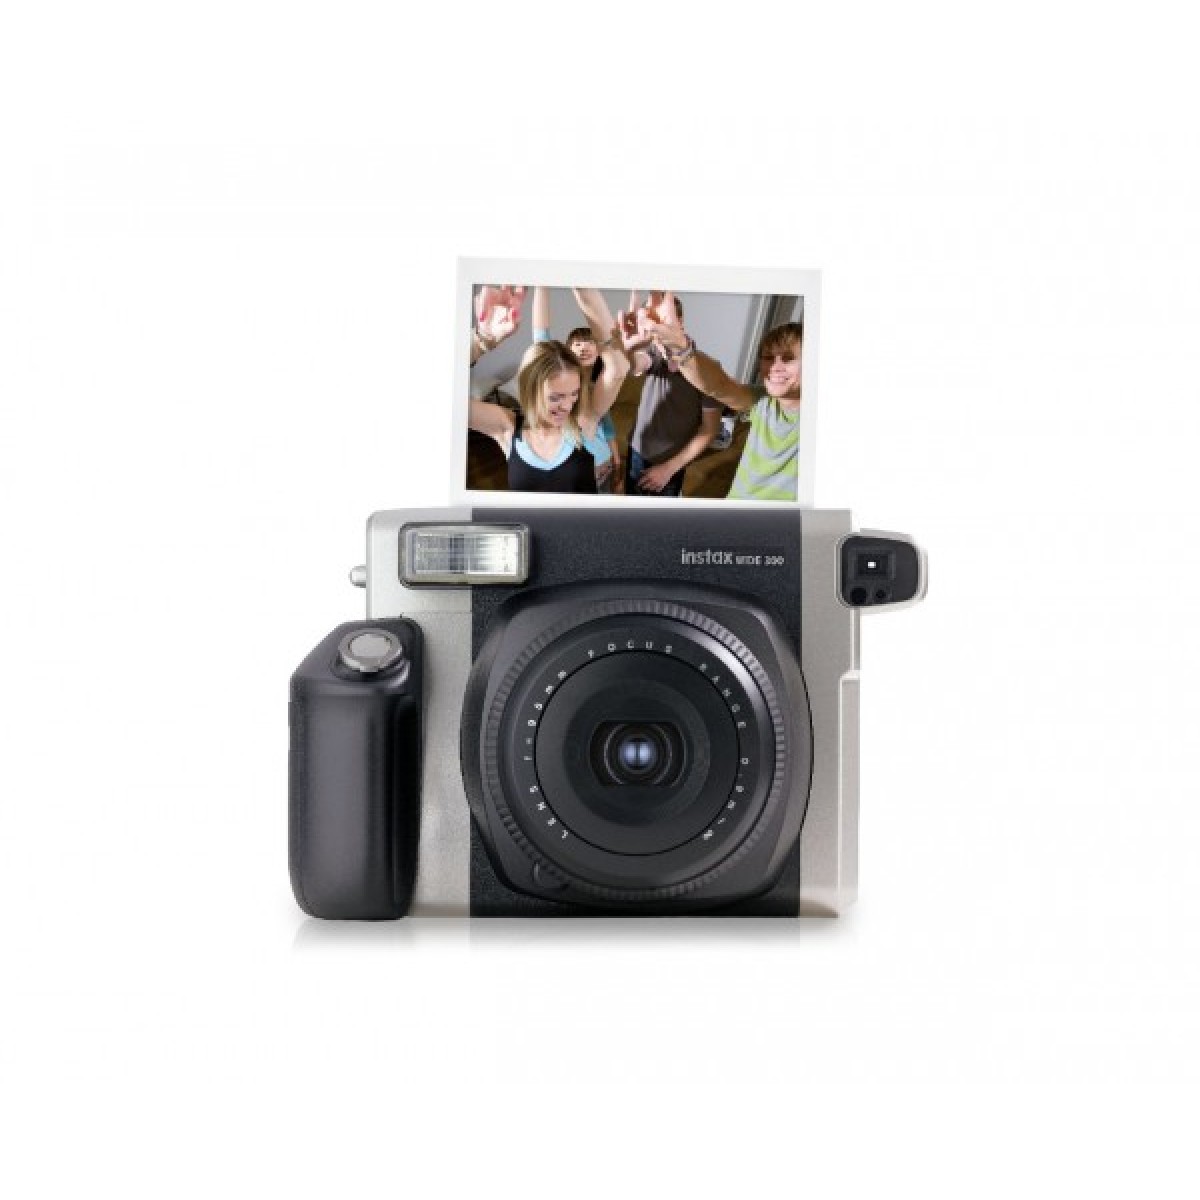 Ophef Doelwit Er is een trend Fuji Instax 300 Camera voor de direct klaar foto van Fuji Instax